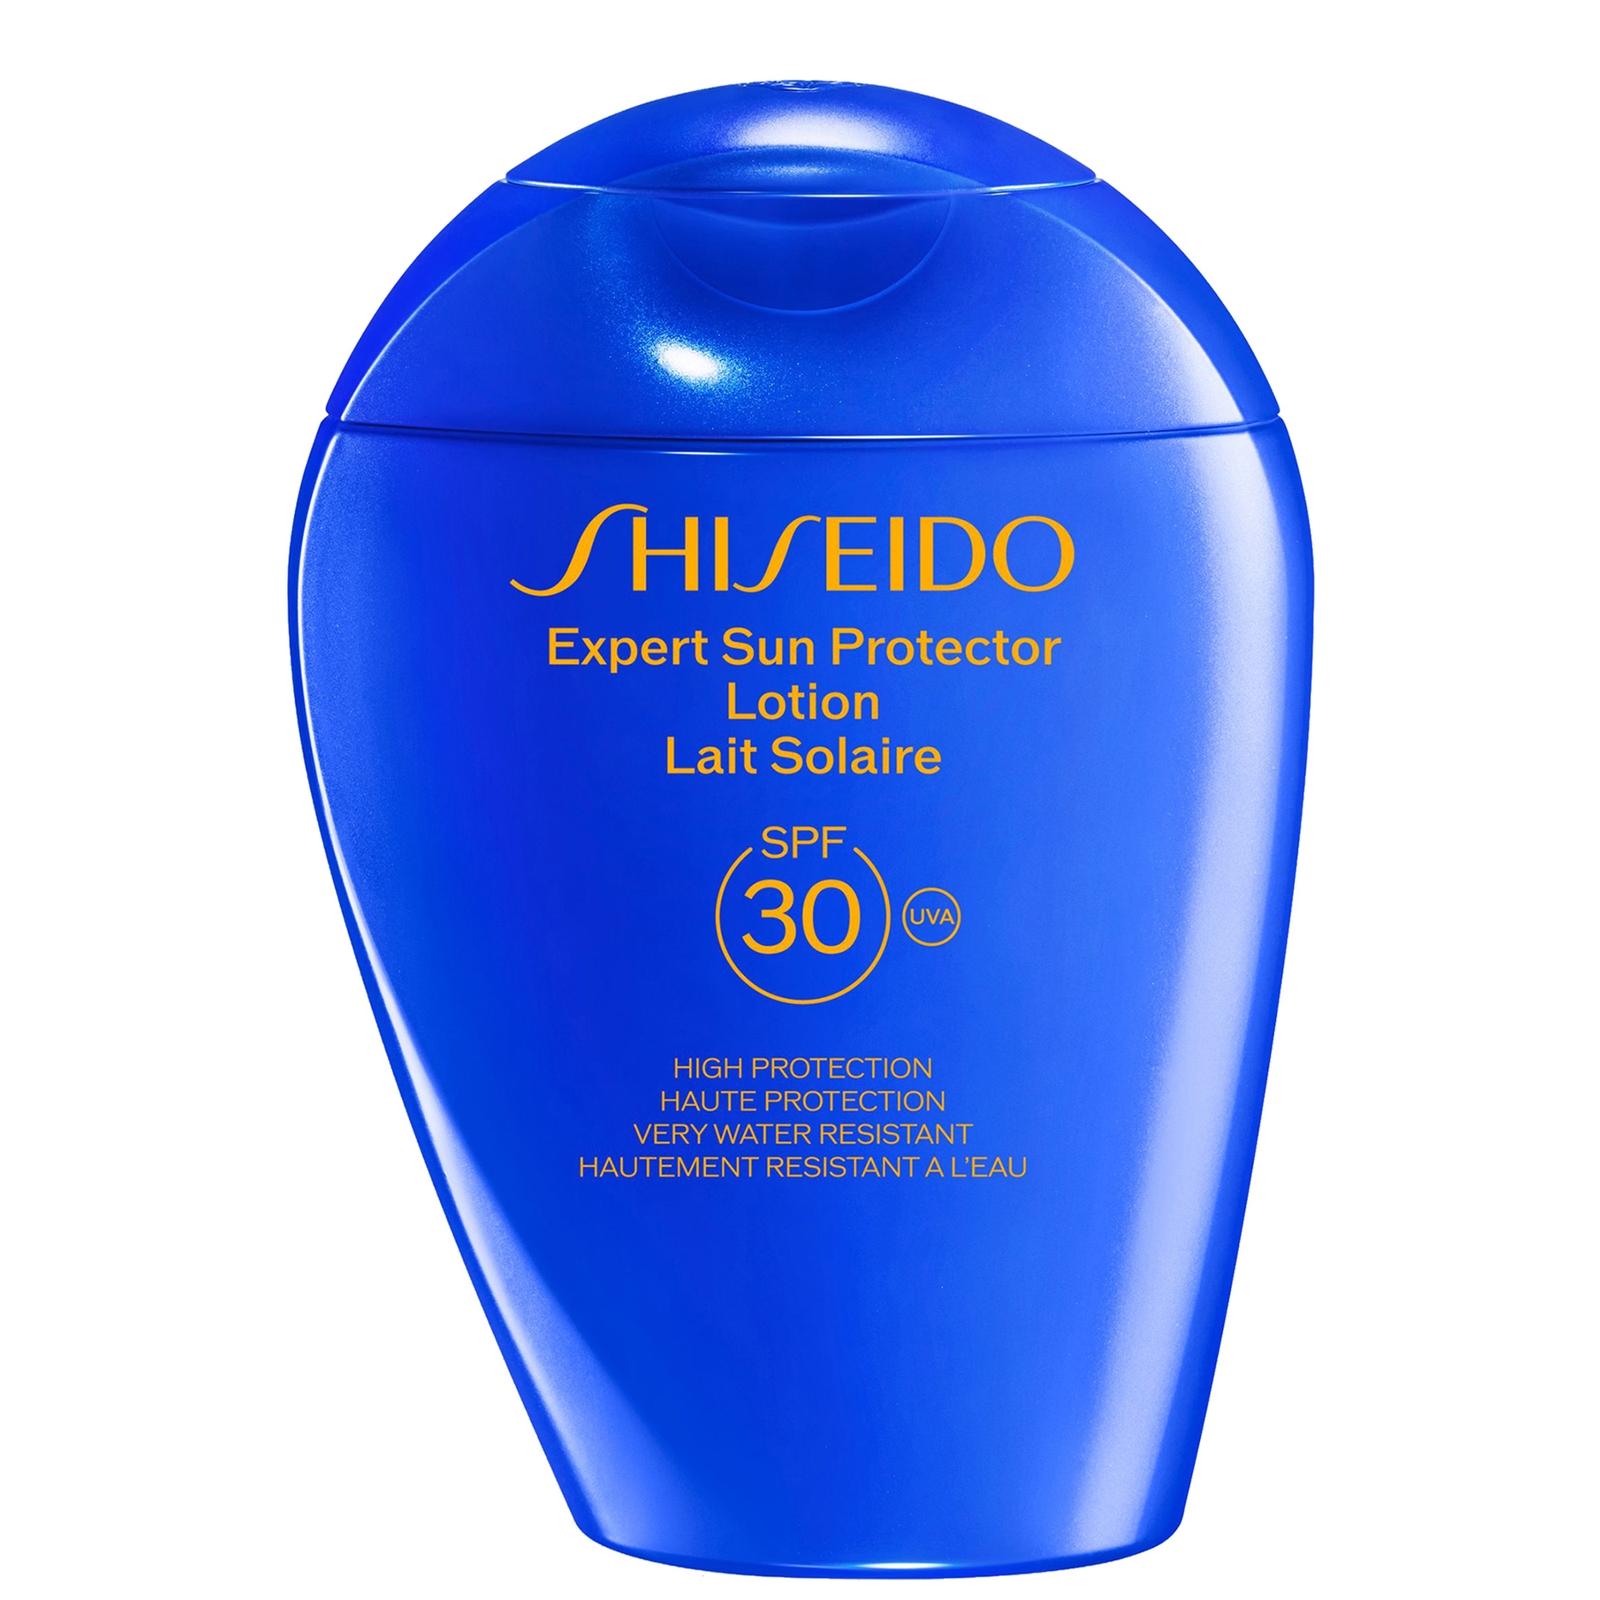 Photos - Cream / Lotion Shiseido Expert Sun Protector Face and Body Lotion SPF30 150ml 